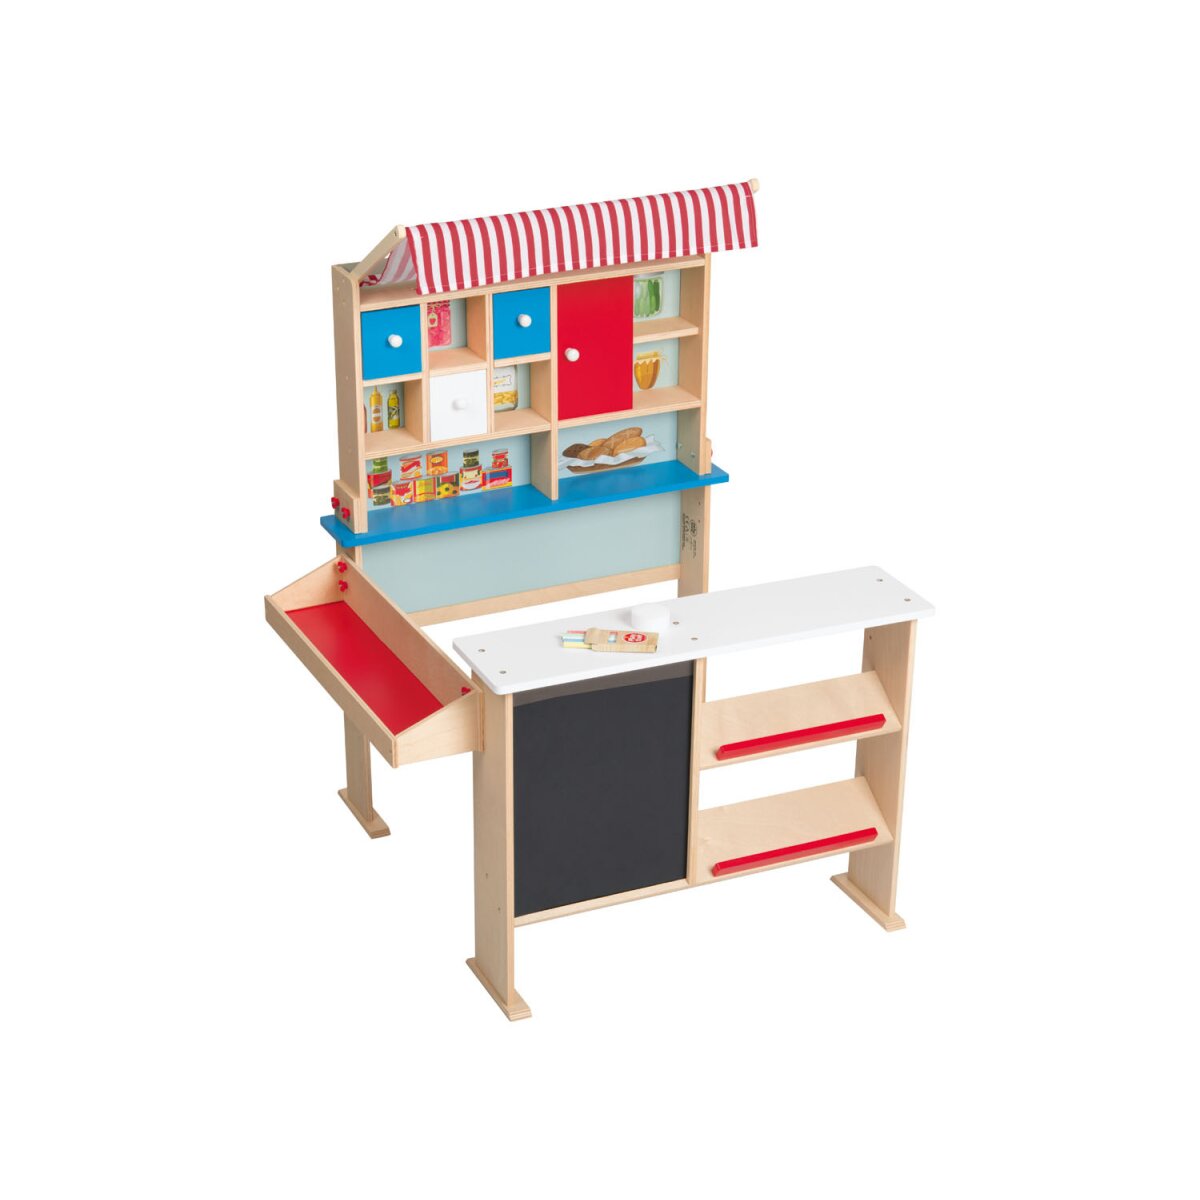 Playtive Holz Kaufladen, mit Markise und Angebotstafel - B-Ware neuwertig,  36,99 €